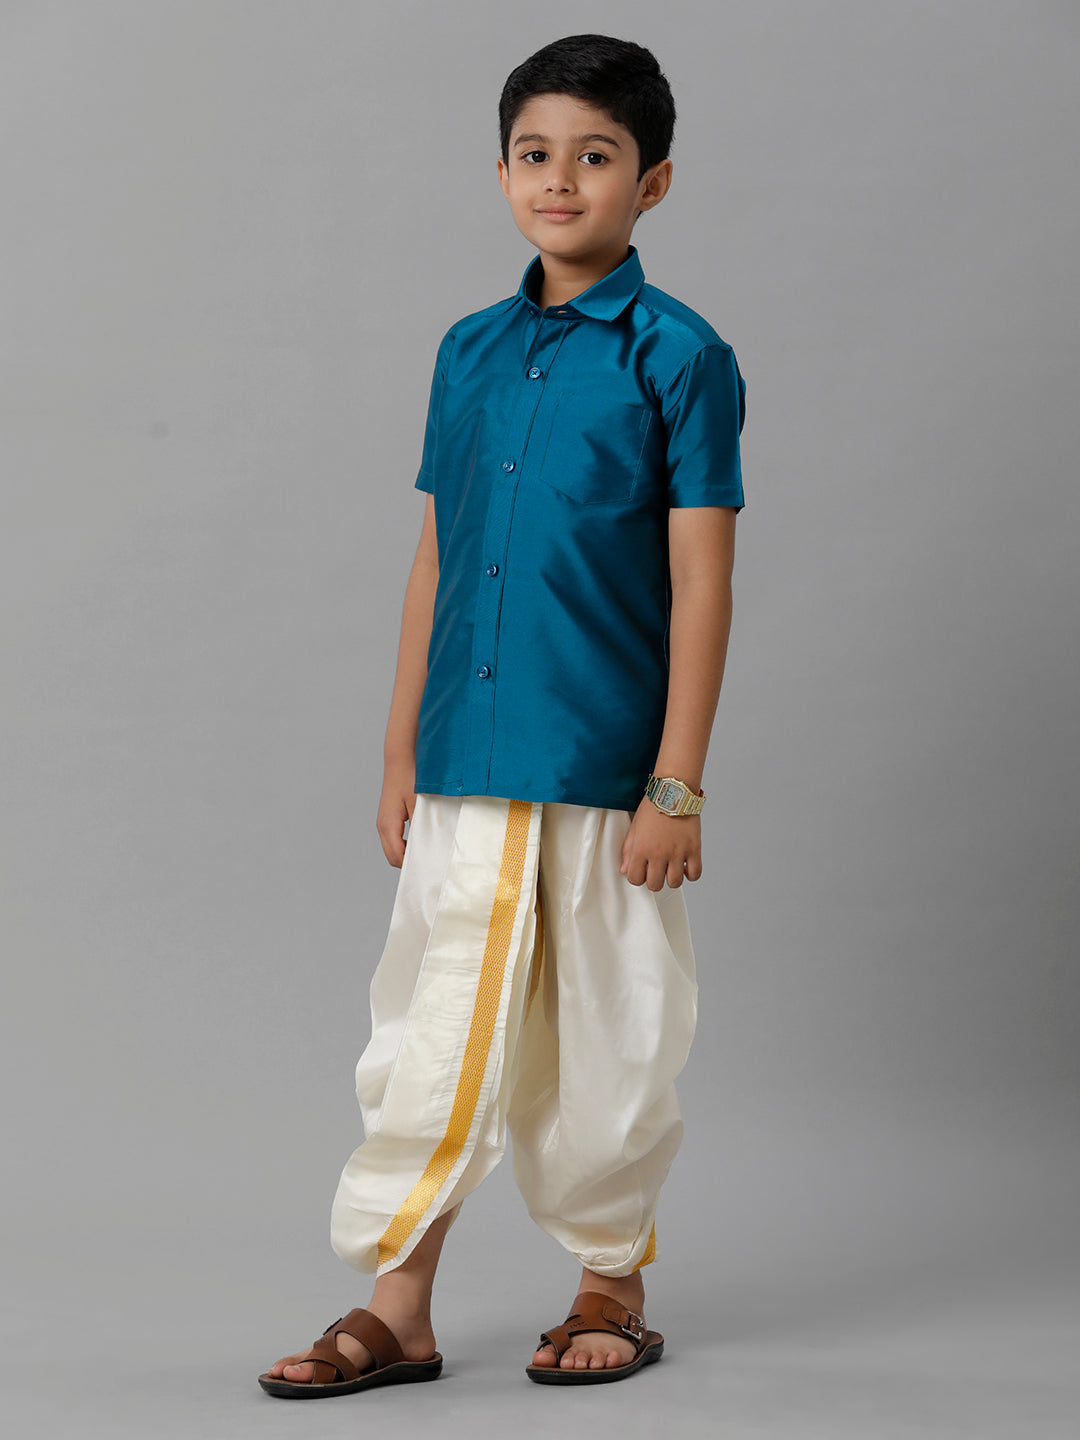 Boys Silk Cotton Ramar Blue Half Sleeves Shirt with Soft Silk Panchakacham Combo K1-Side view